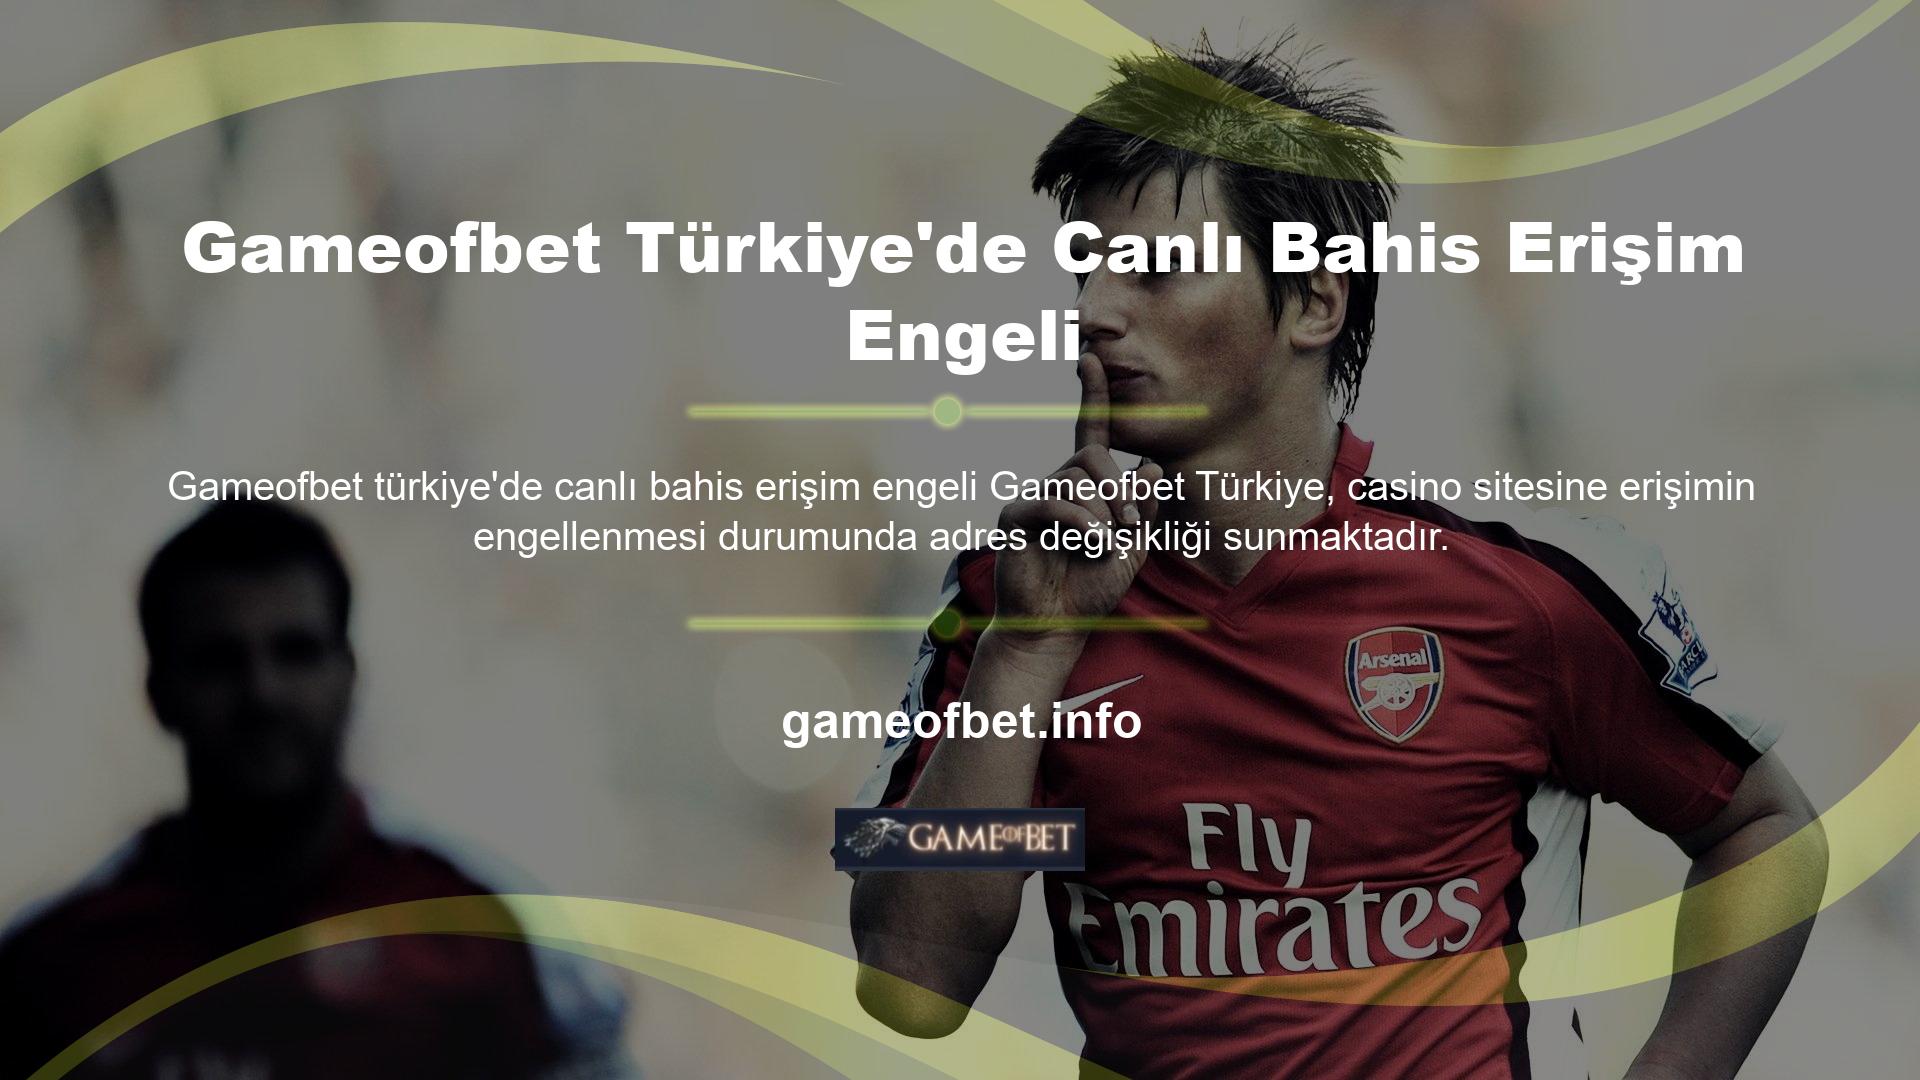 Bu işlem kayıtlı Türk oyuncuların siteye erişmesine olanak sağlar